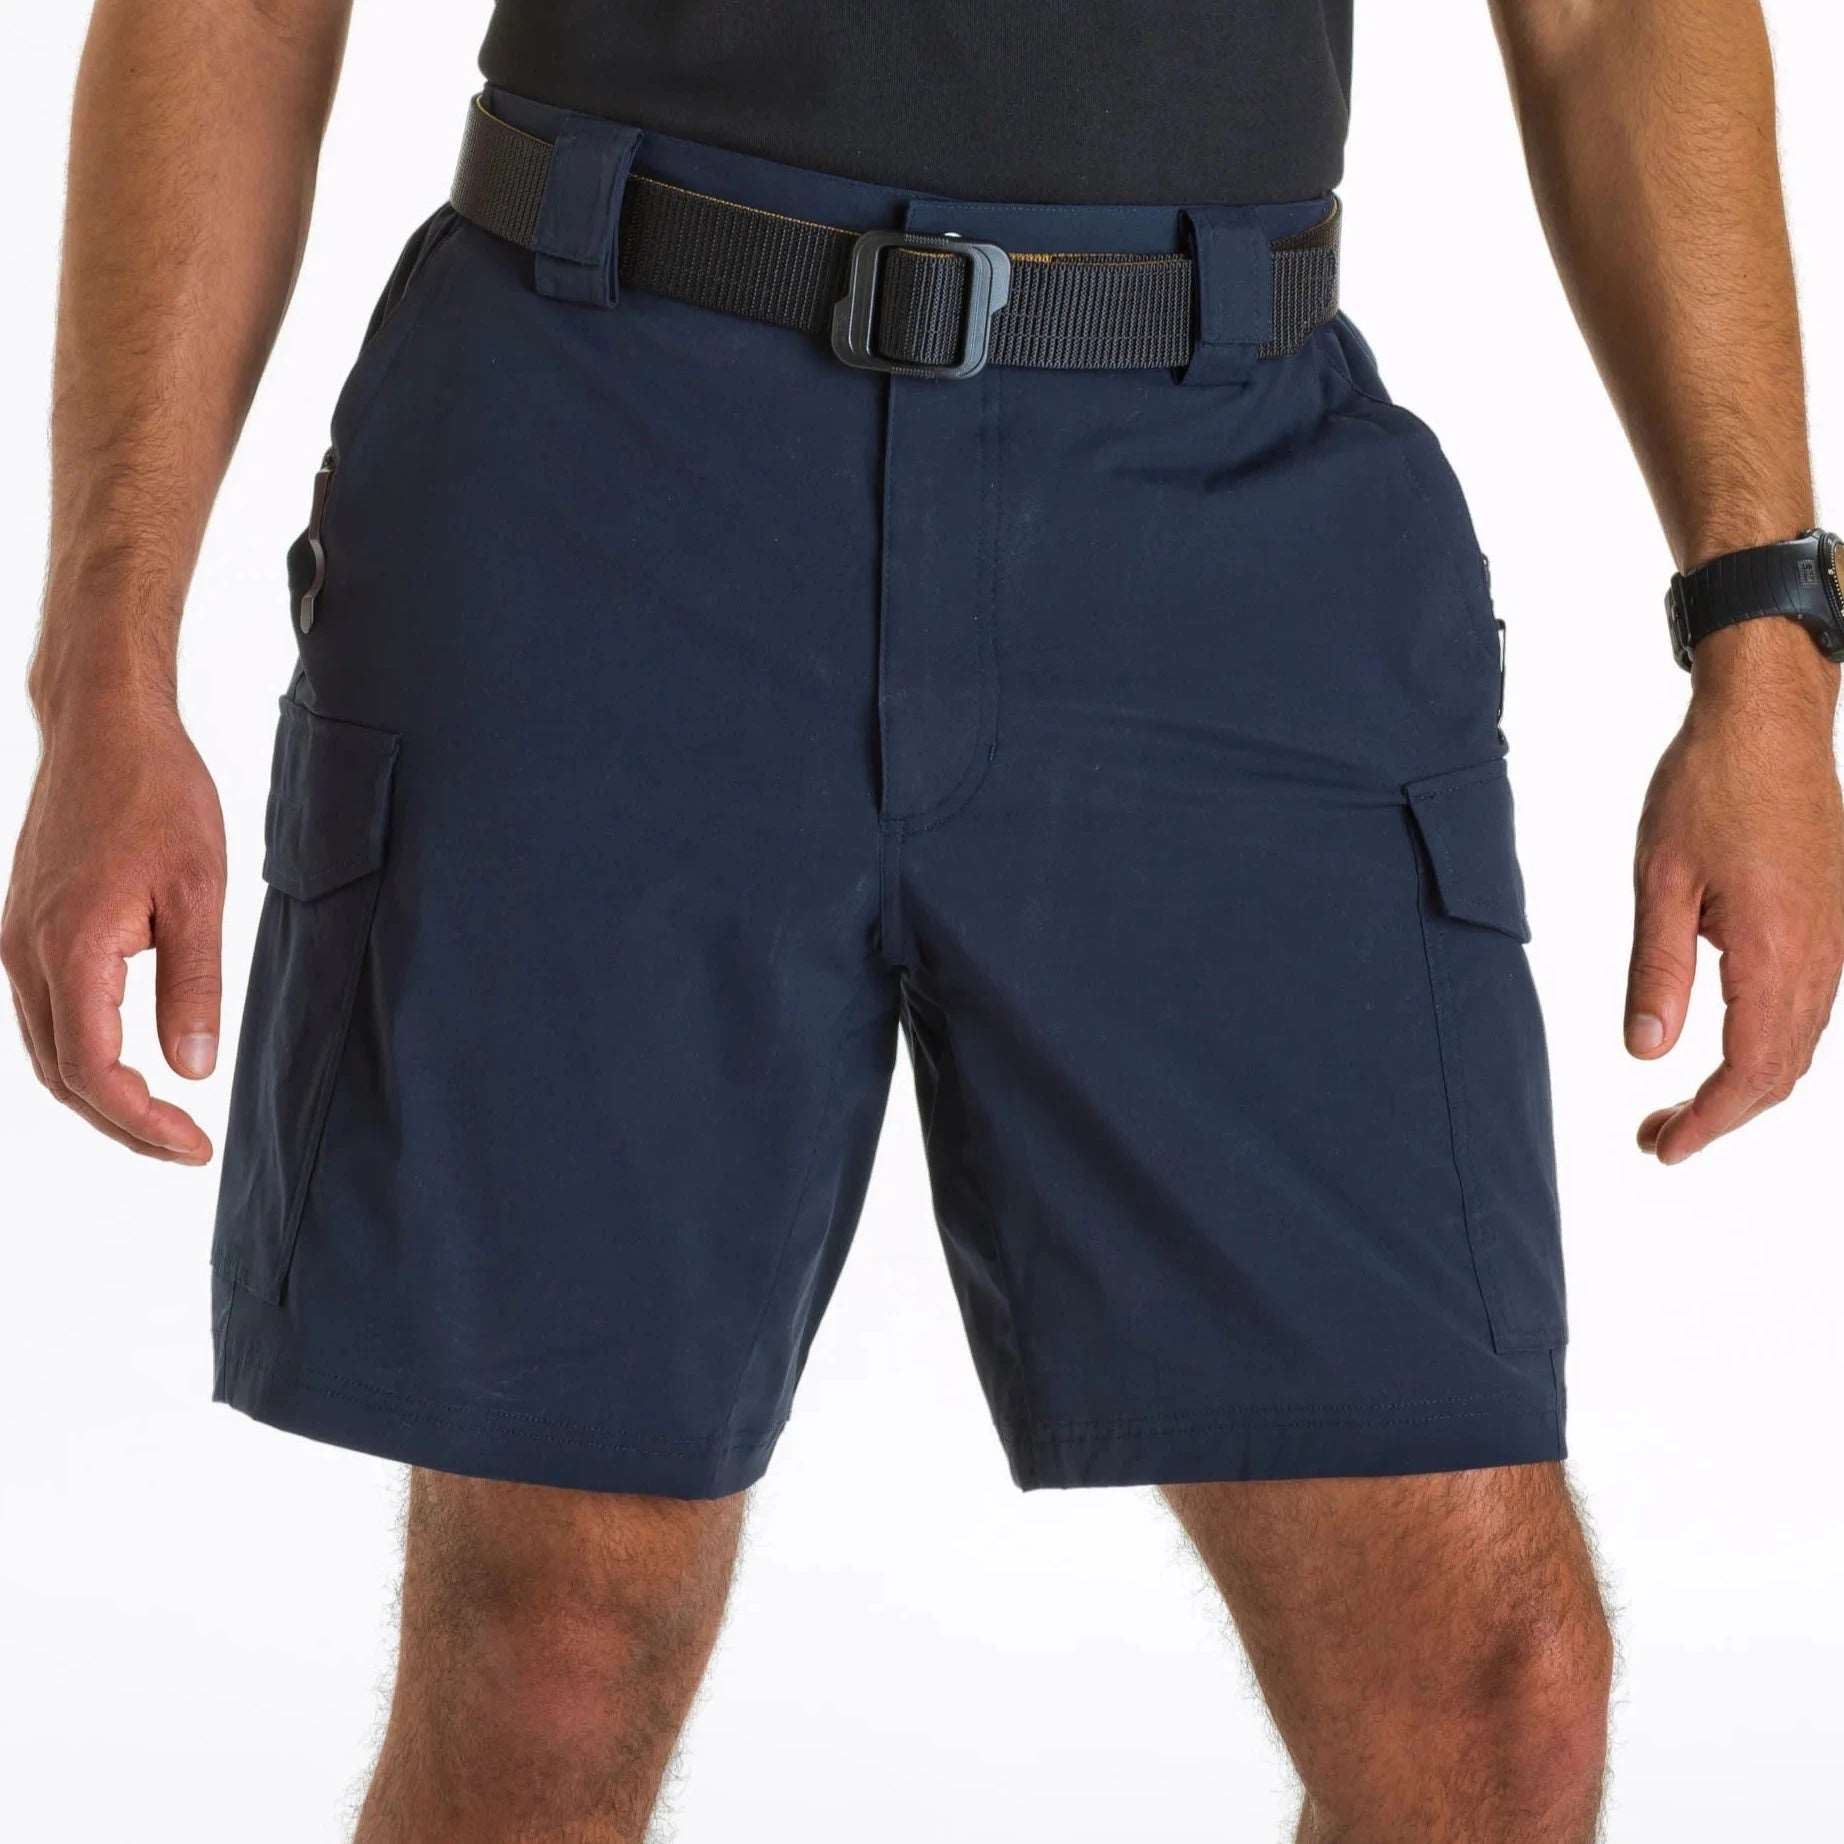 Shorts - 5.11 Tactical Patrol 9" Shorts